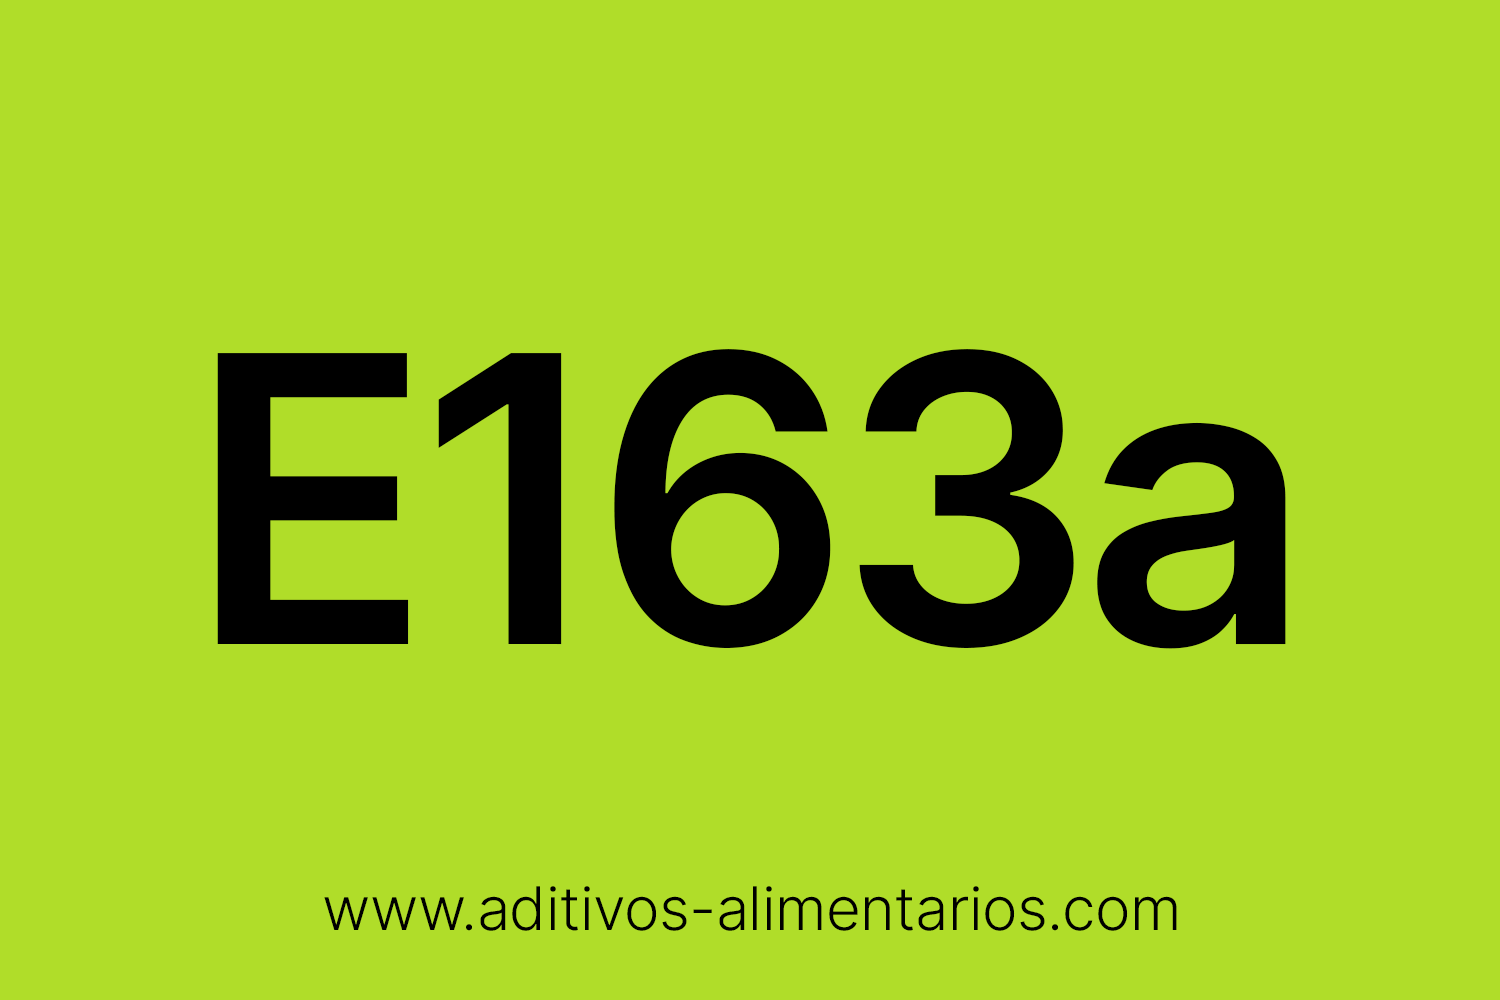 Aditivo Alimentario - E163a - Cianidina